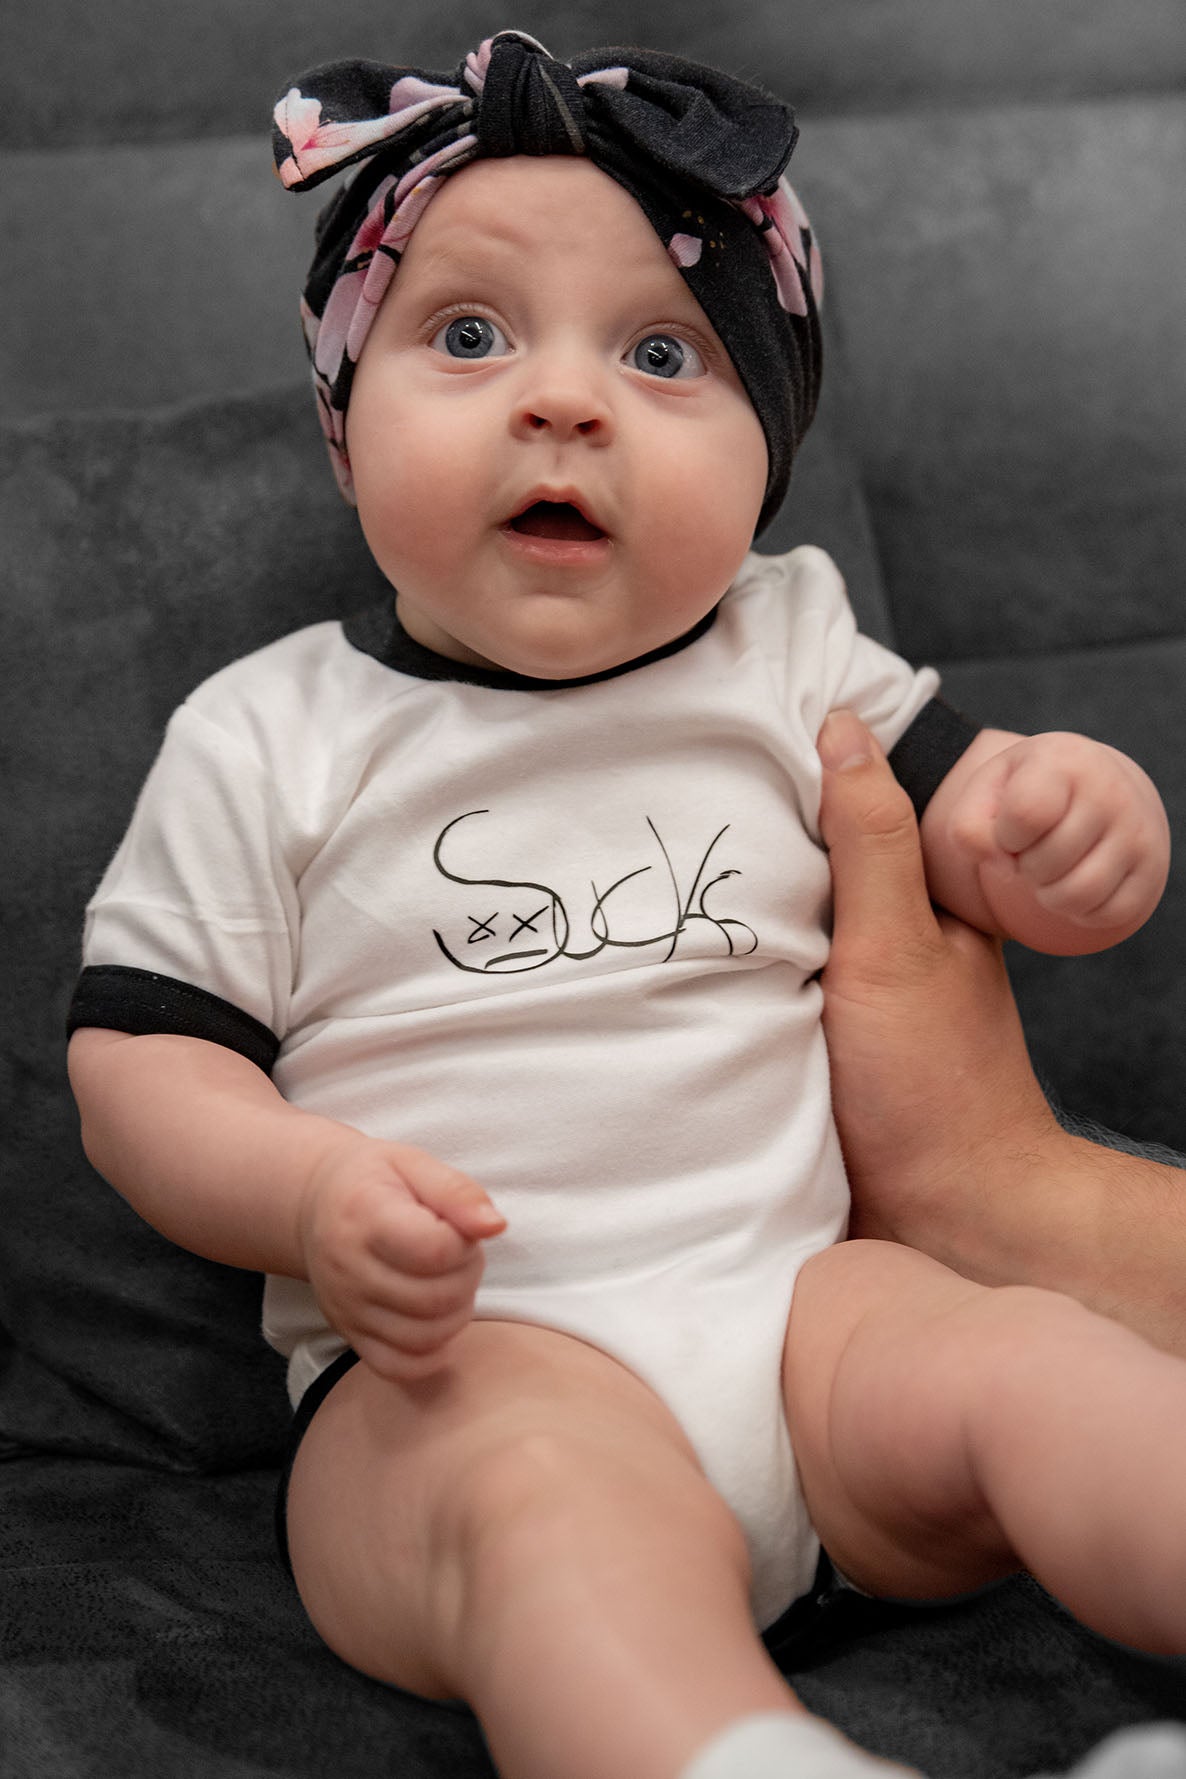 Baby wrestler bodysuit